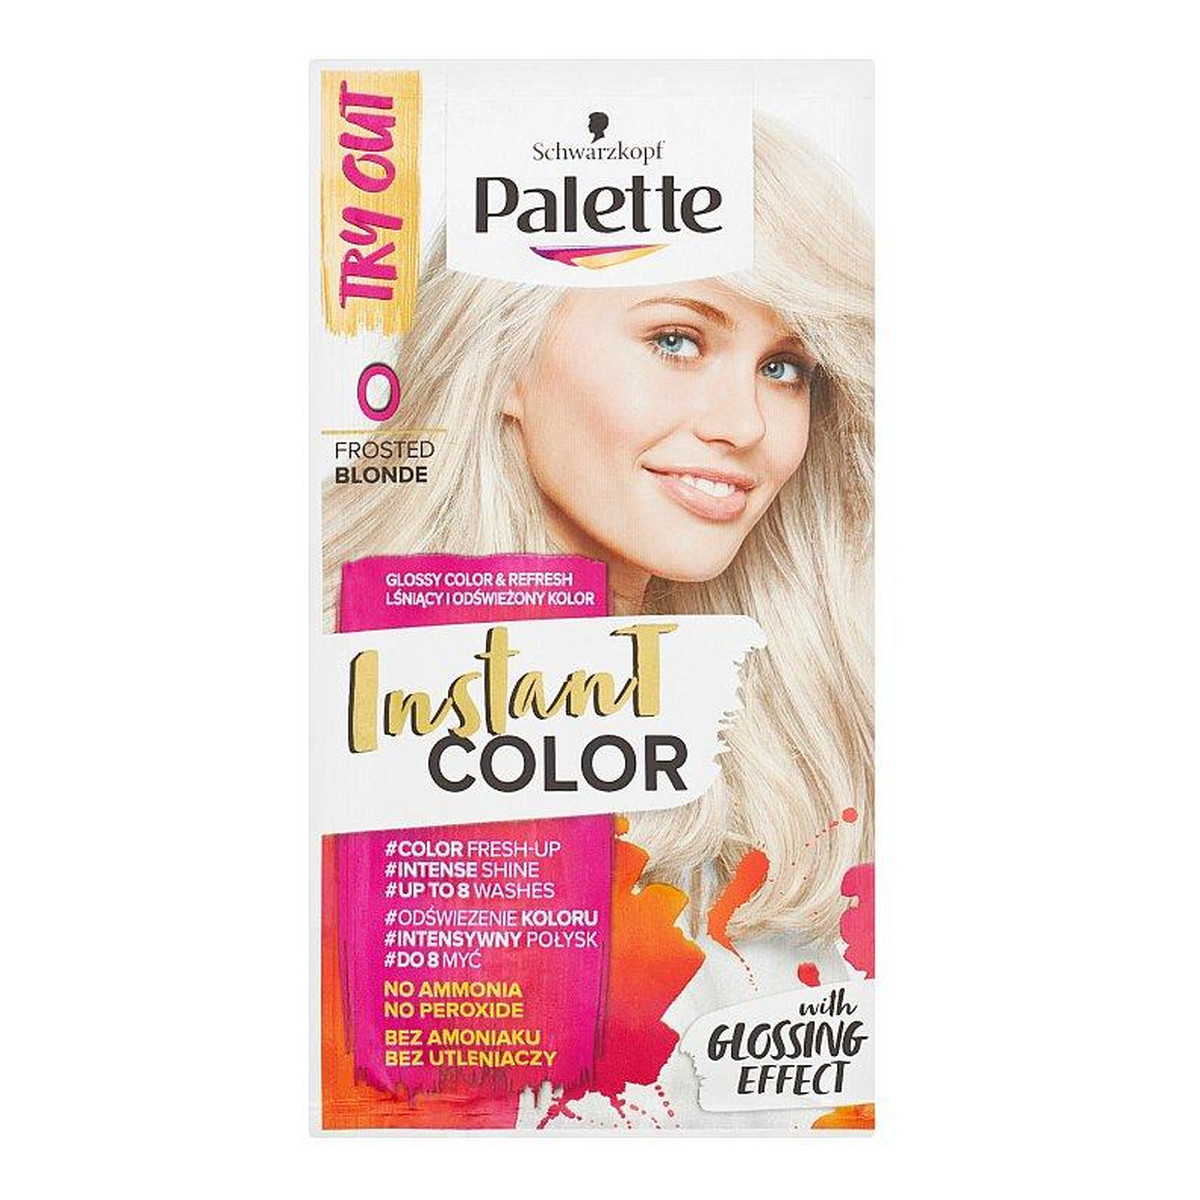 palette szampon koloryzujacy w zaszetce